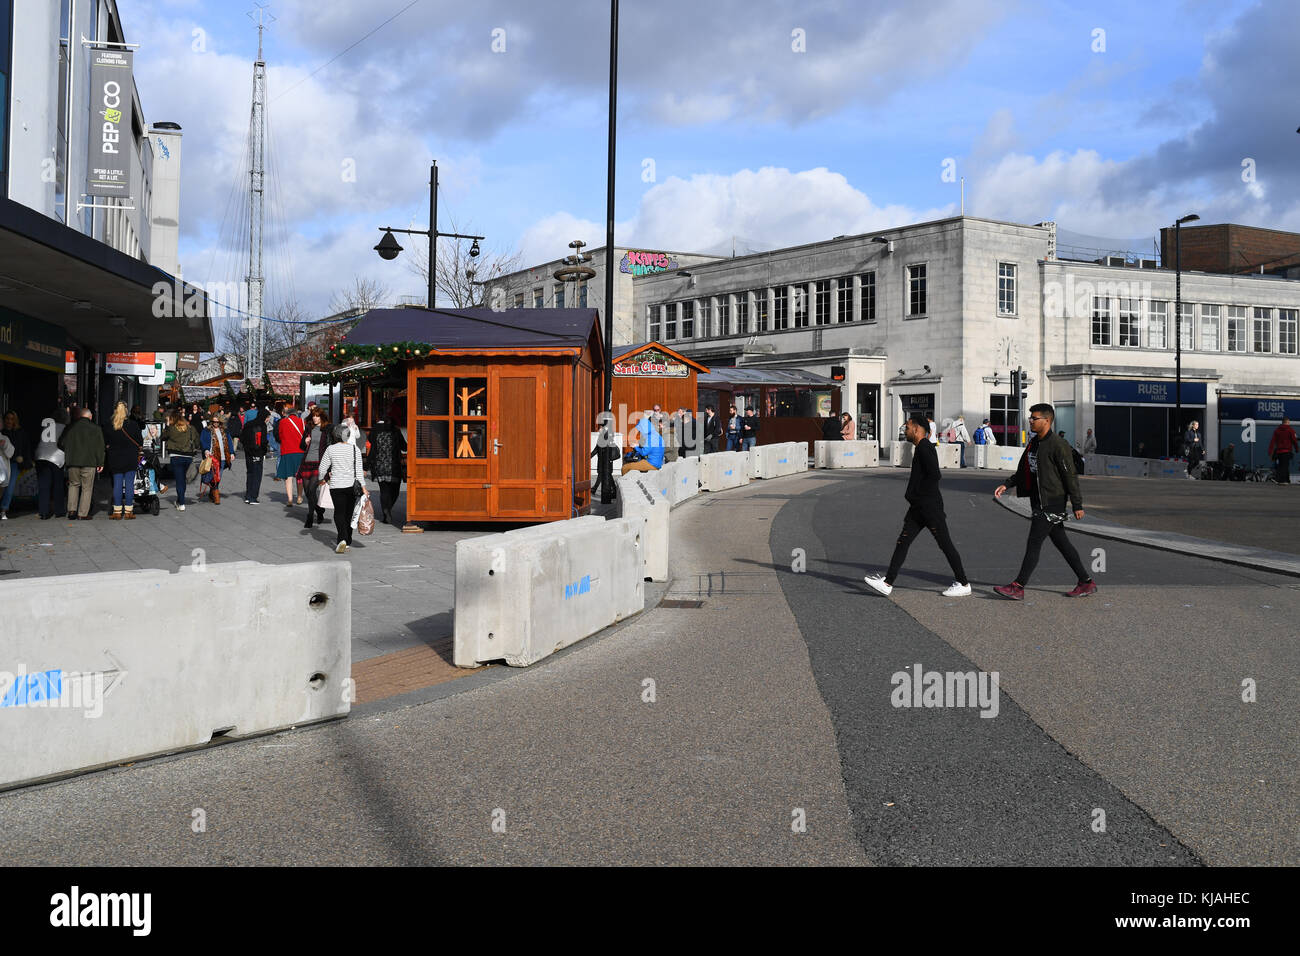 Les structures en béton érigé à Southampton en Angleterre à l'entrée du marché de Noël à protéger contre le terrorisme à l'aide de véhicules comme armes. Banque D'Images